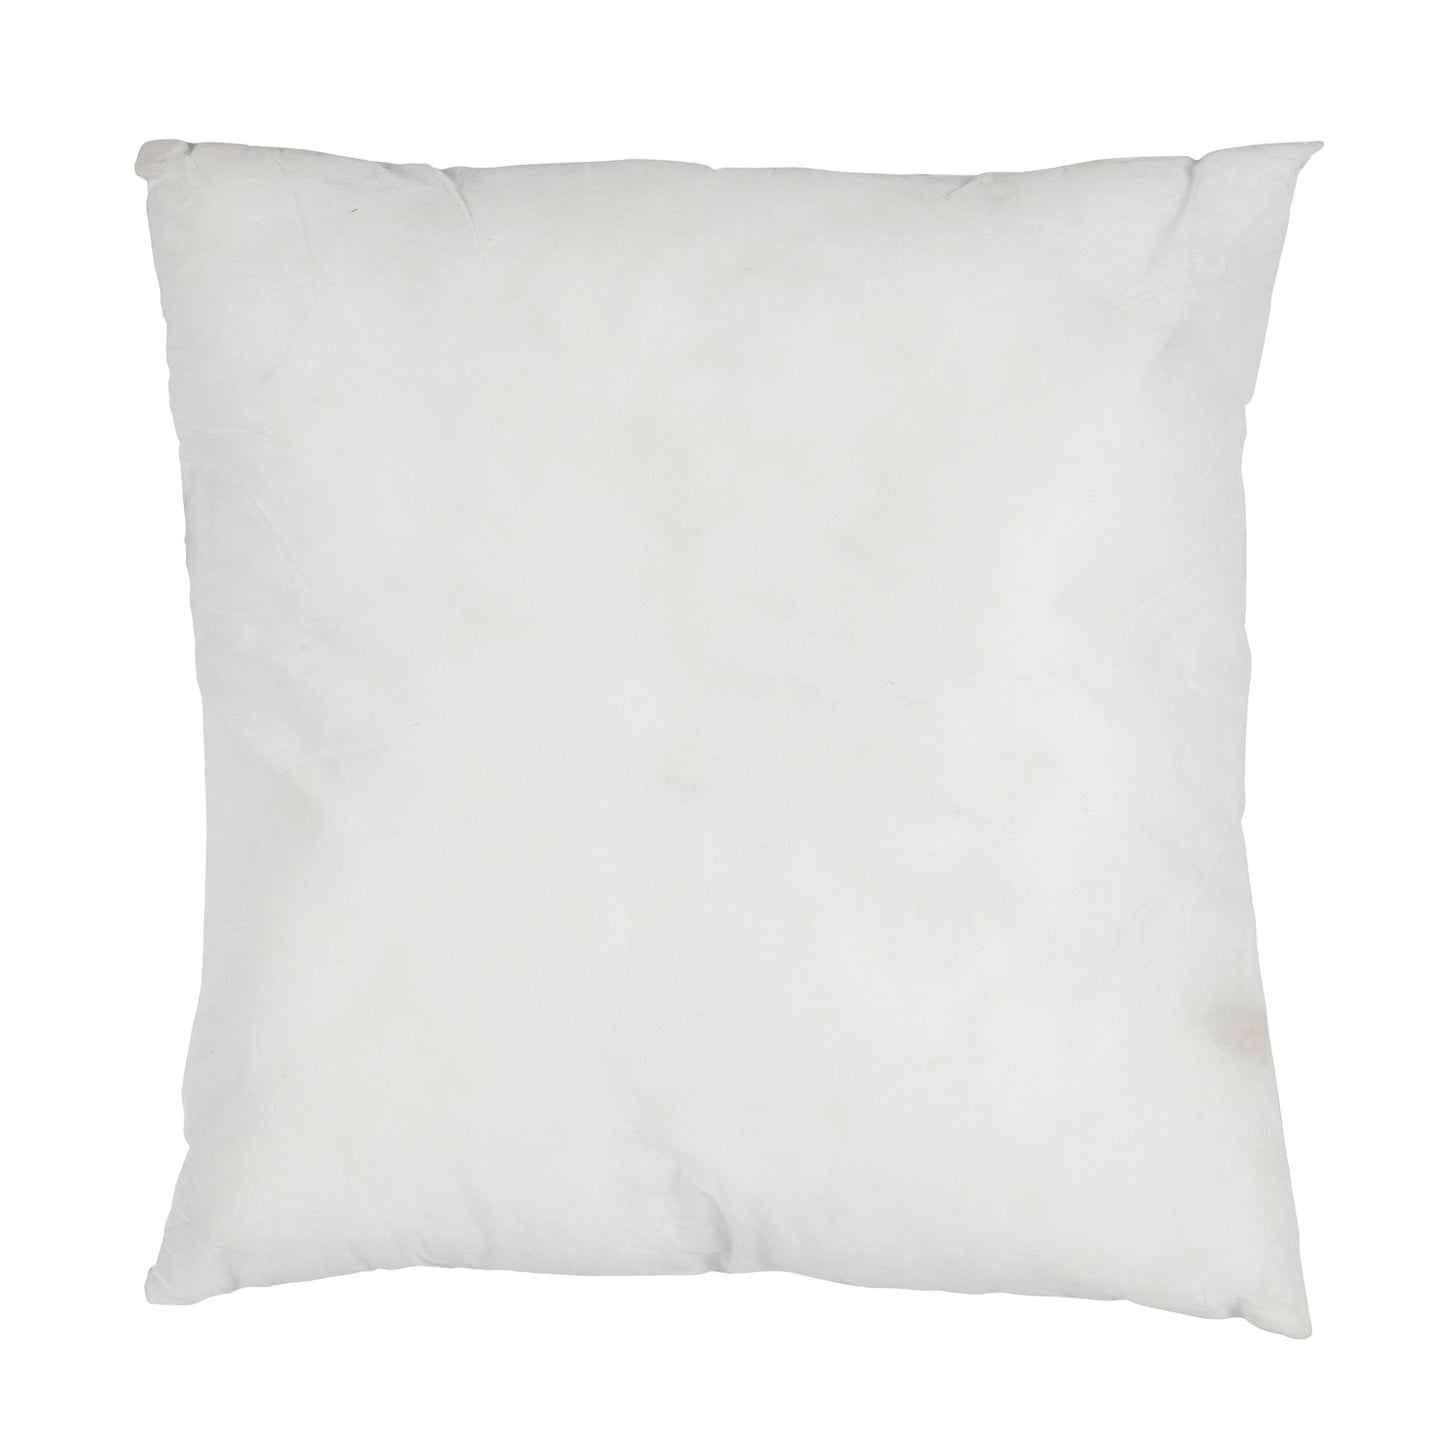 Indoor/Outdoor Pillow Form